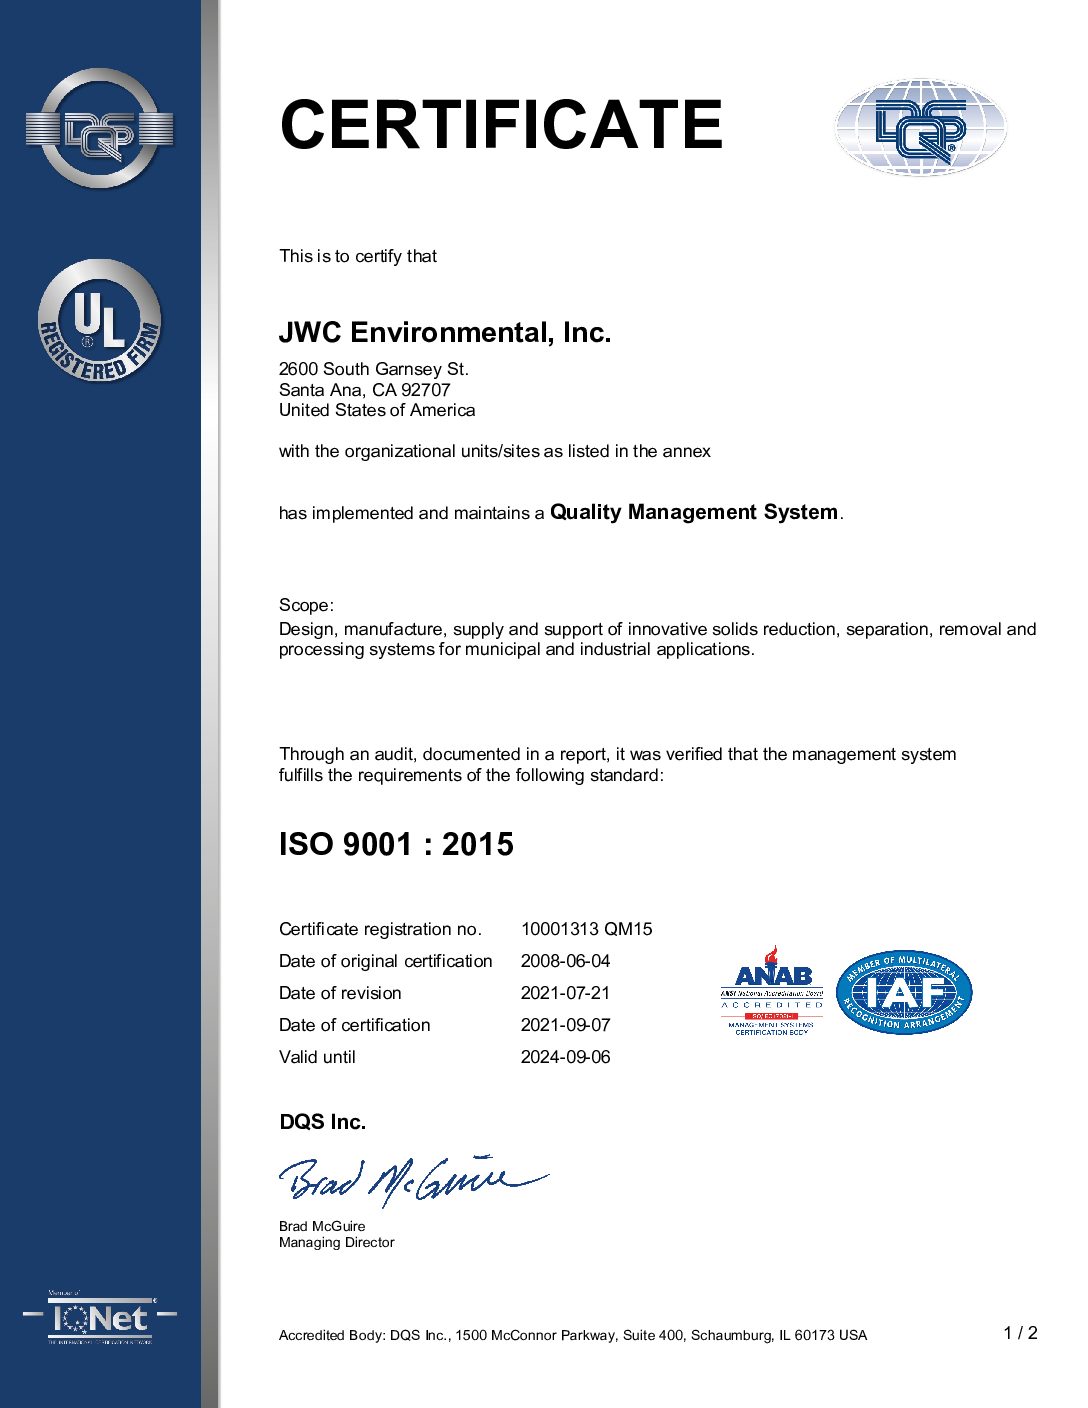 JWCE ISO Certificate